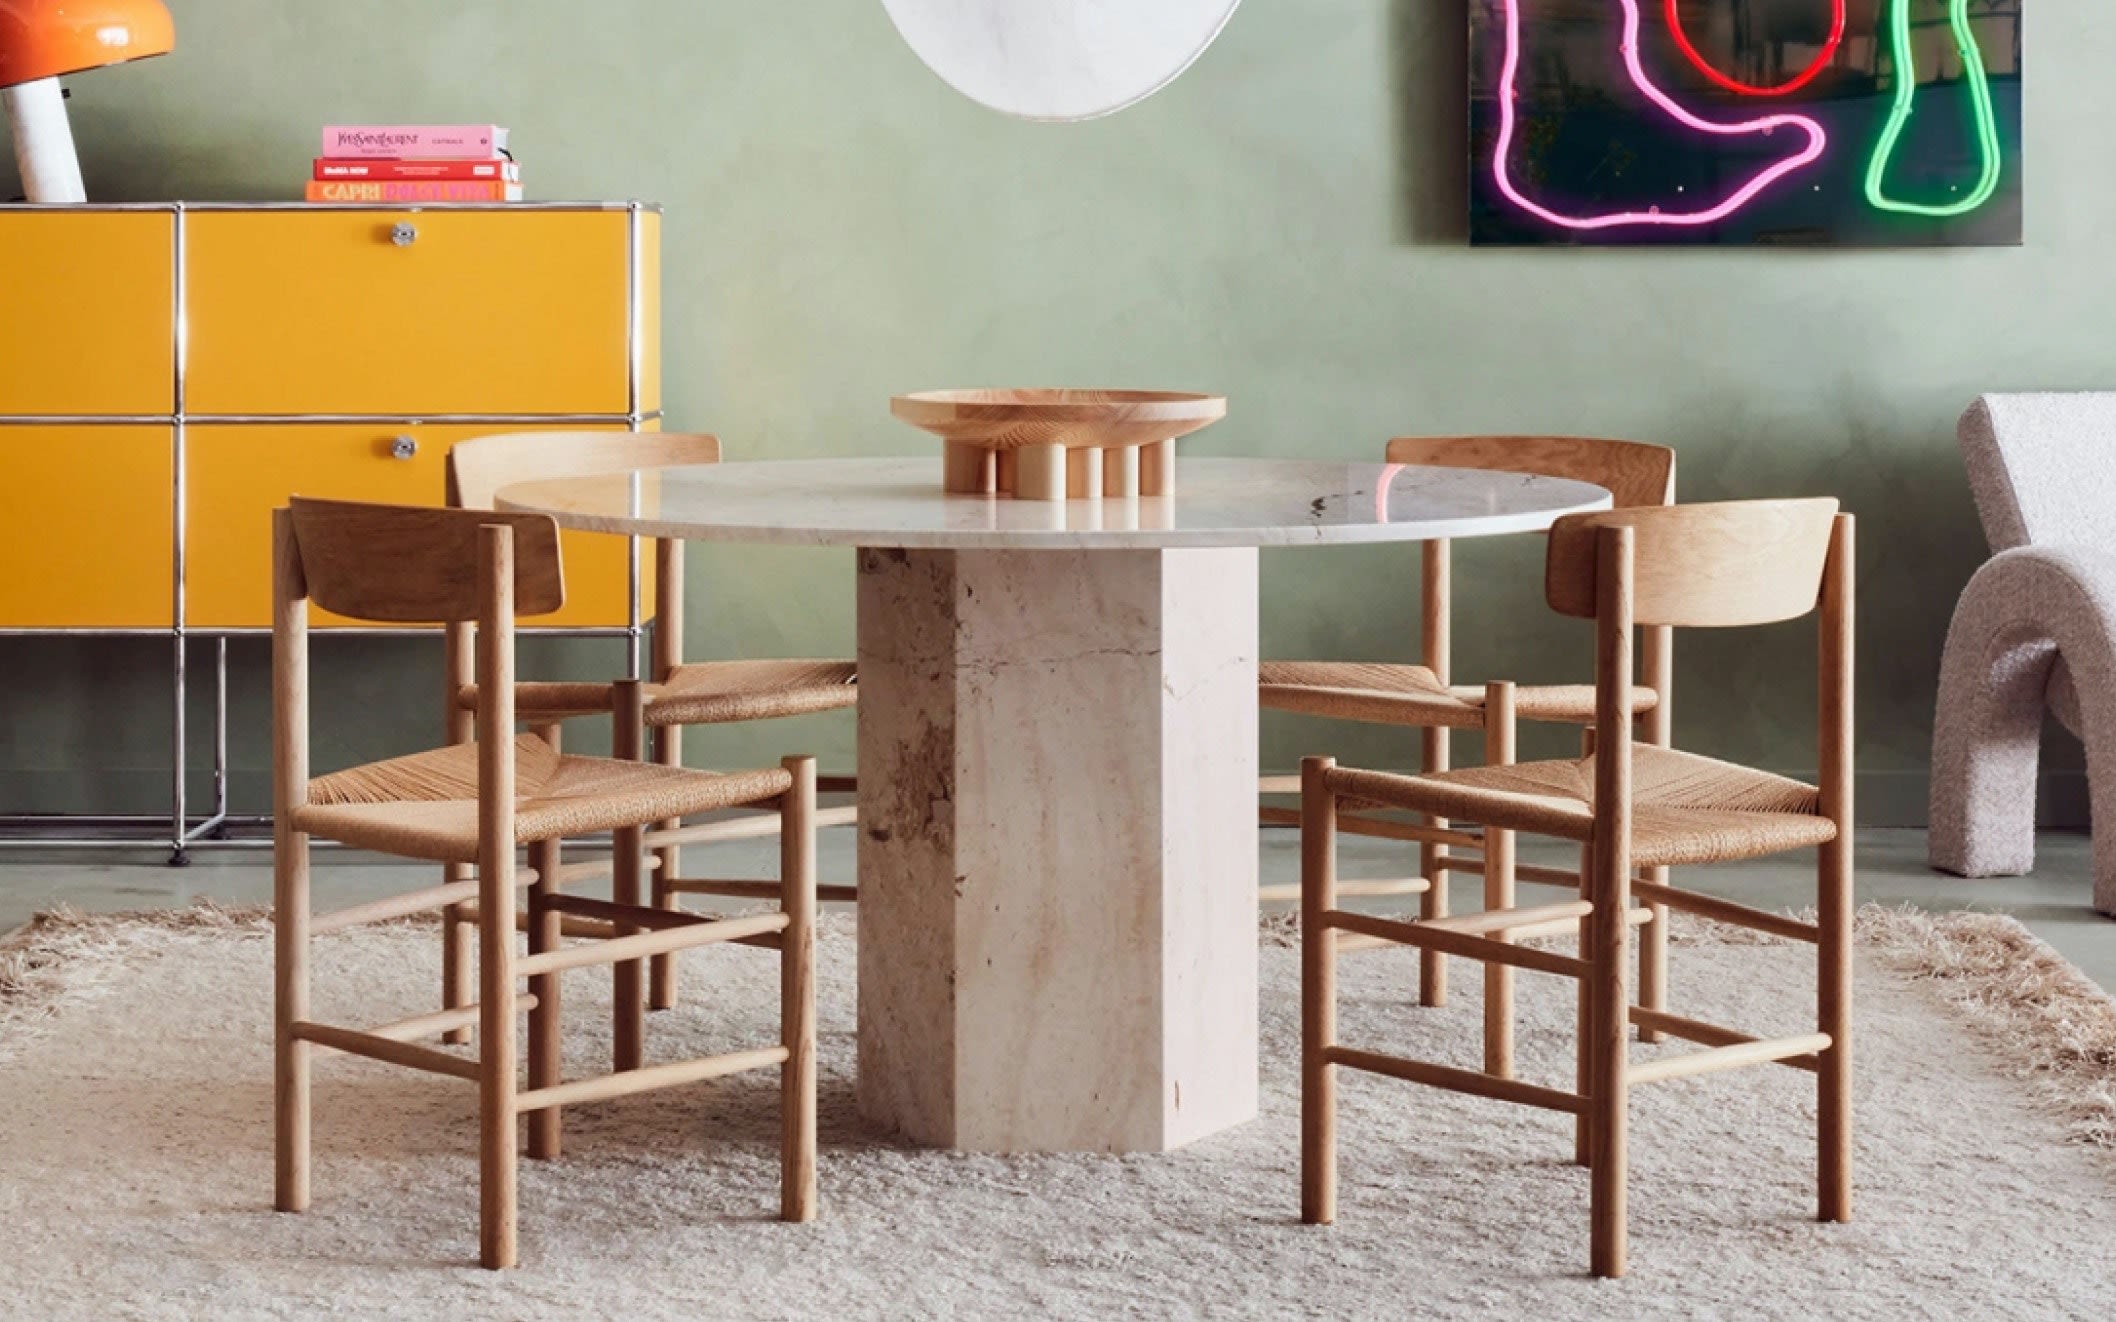 Editorial Splash 6 - Så väljer du rätt matbord för ditt hem